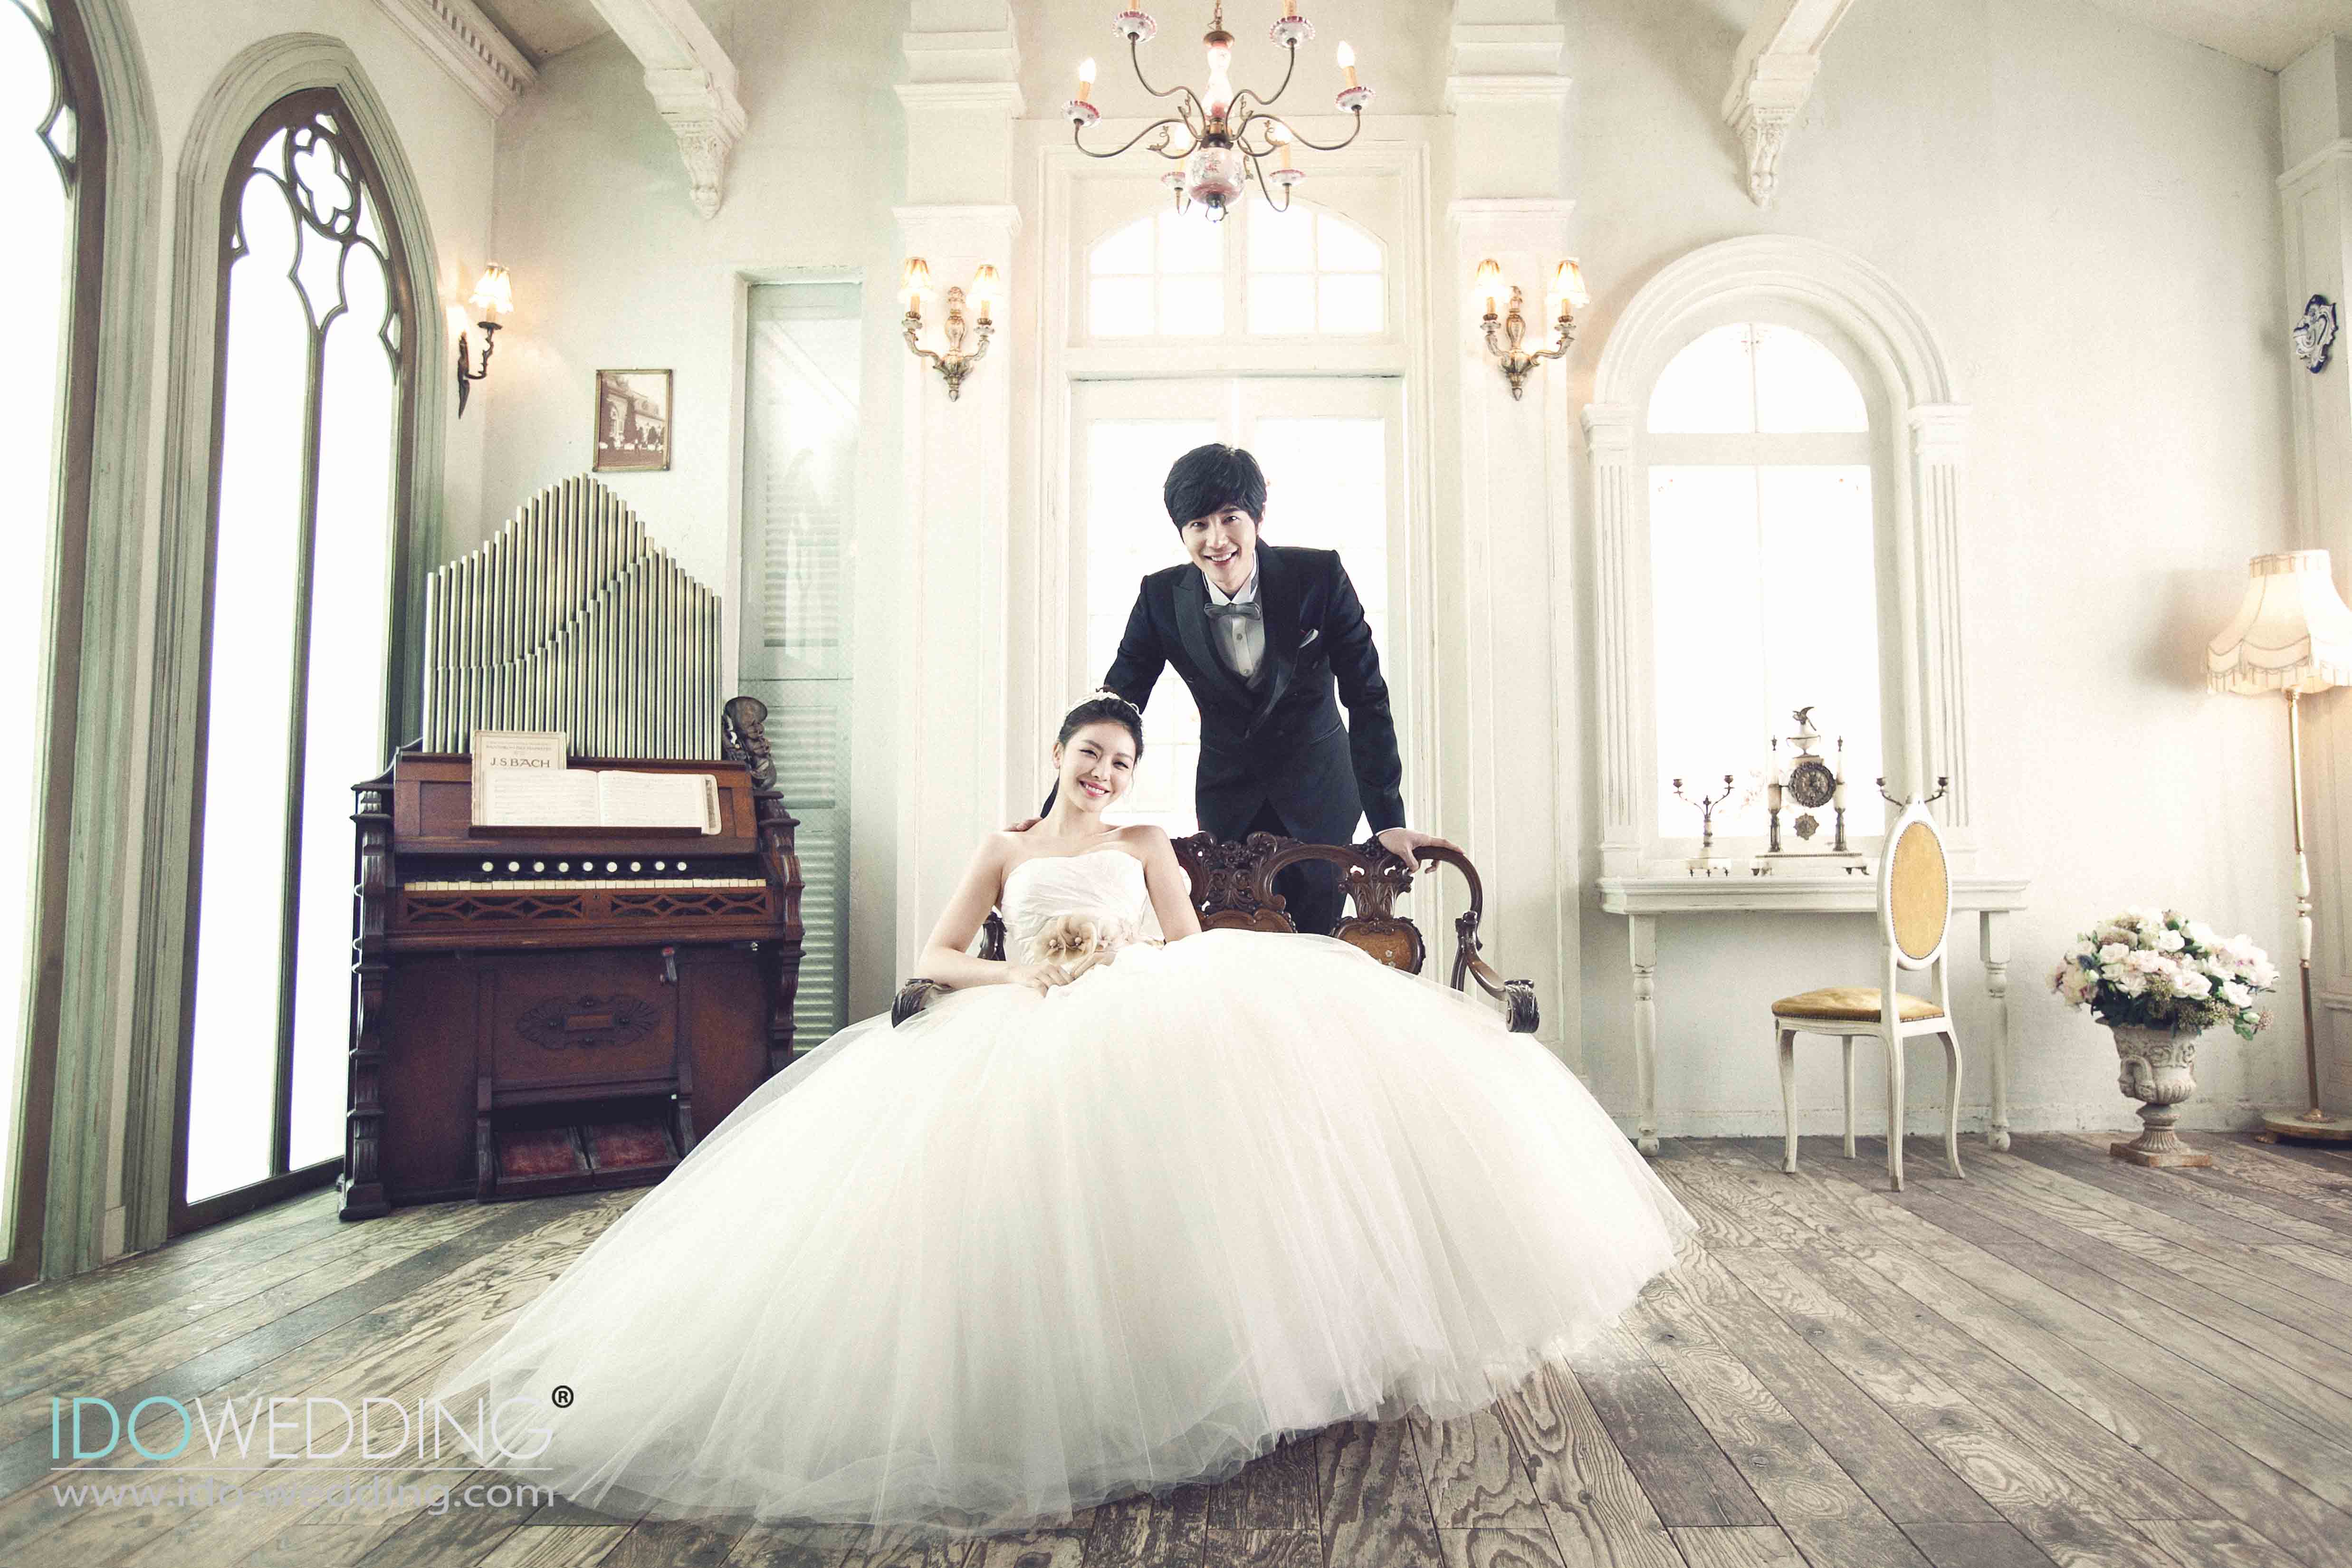 Pre Wedding Photography In Korea Expired Korean